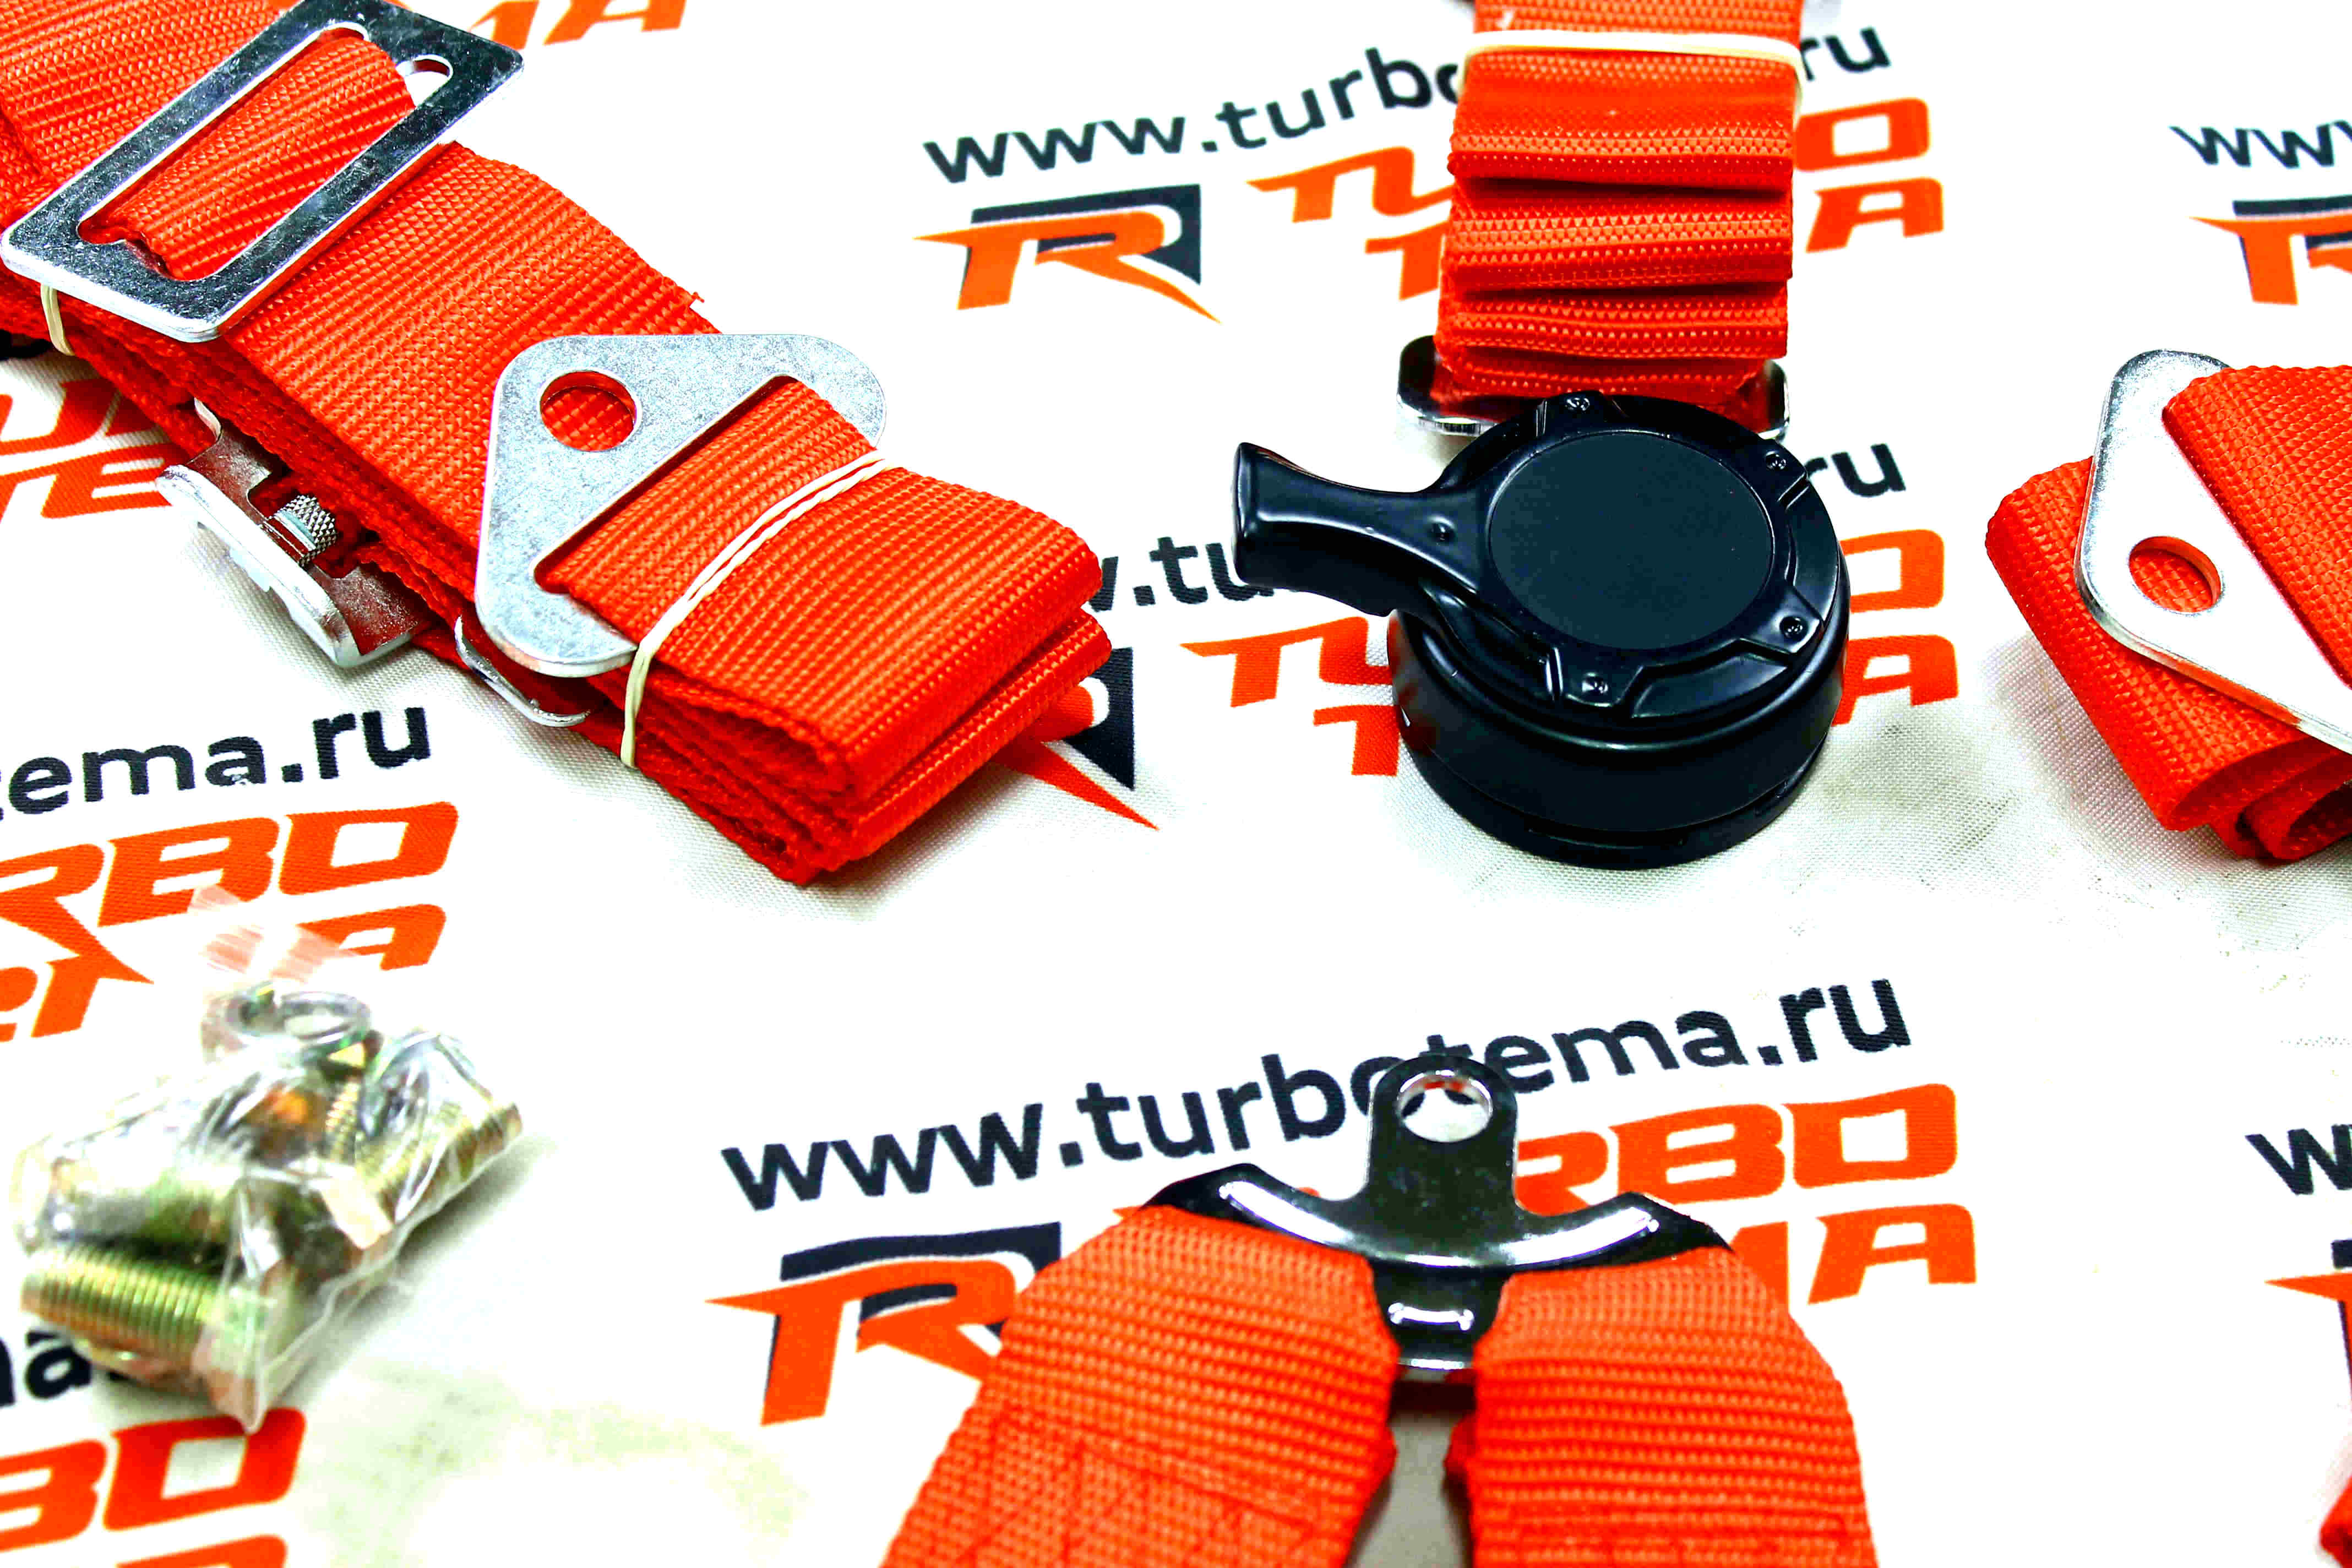 Ремни безопасности "TURBOTEMA" 6-х точечные, 2" ширина, быстросъемные (красные) JBR4001-6. Фото �4